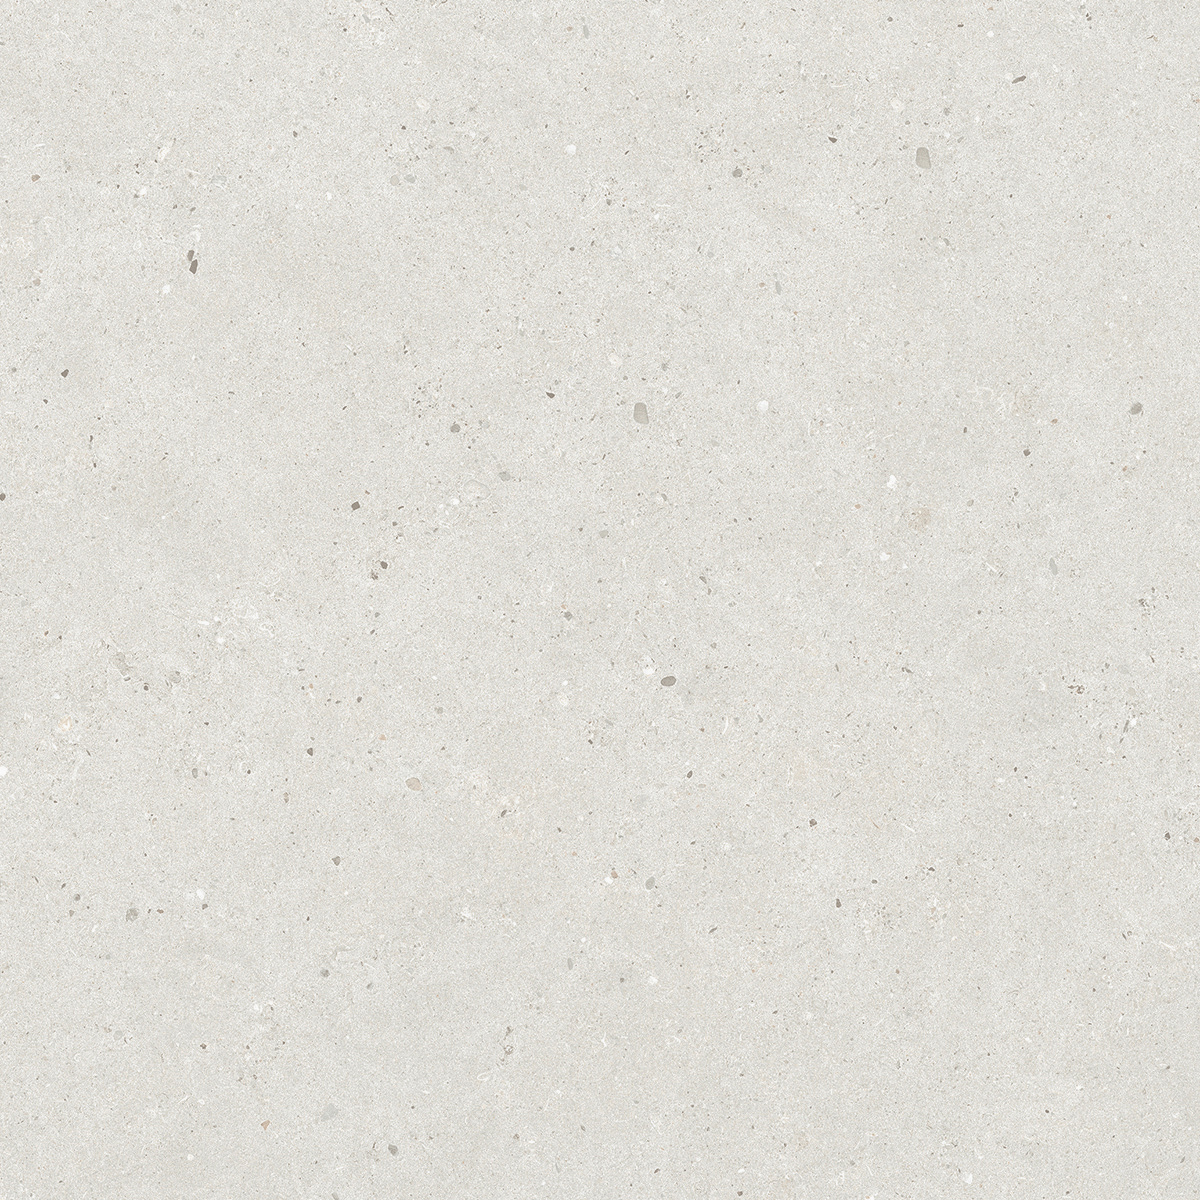 Italgraniti Silver Grain White Naturale – Matt SI0168 60x60cm rectified 9mm